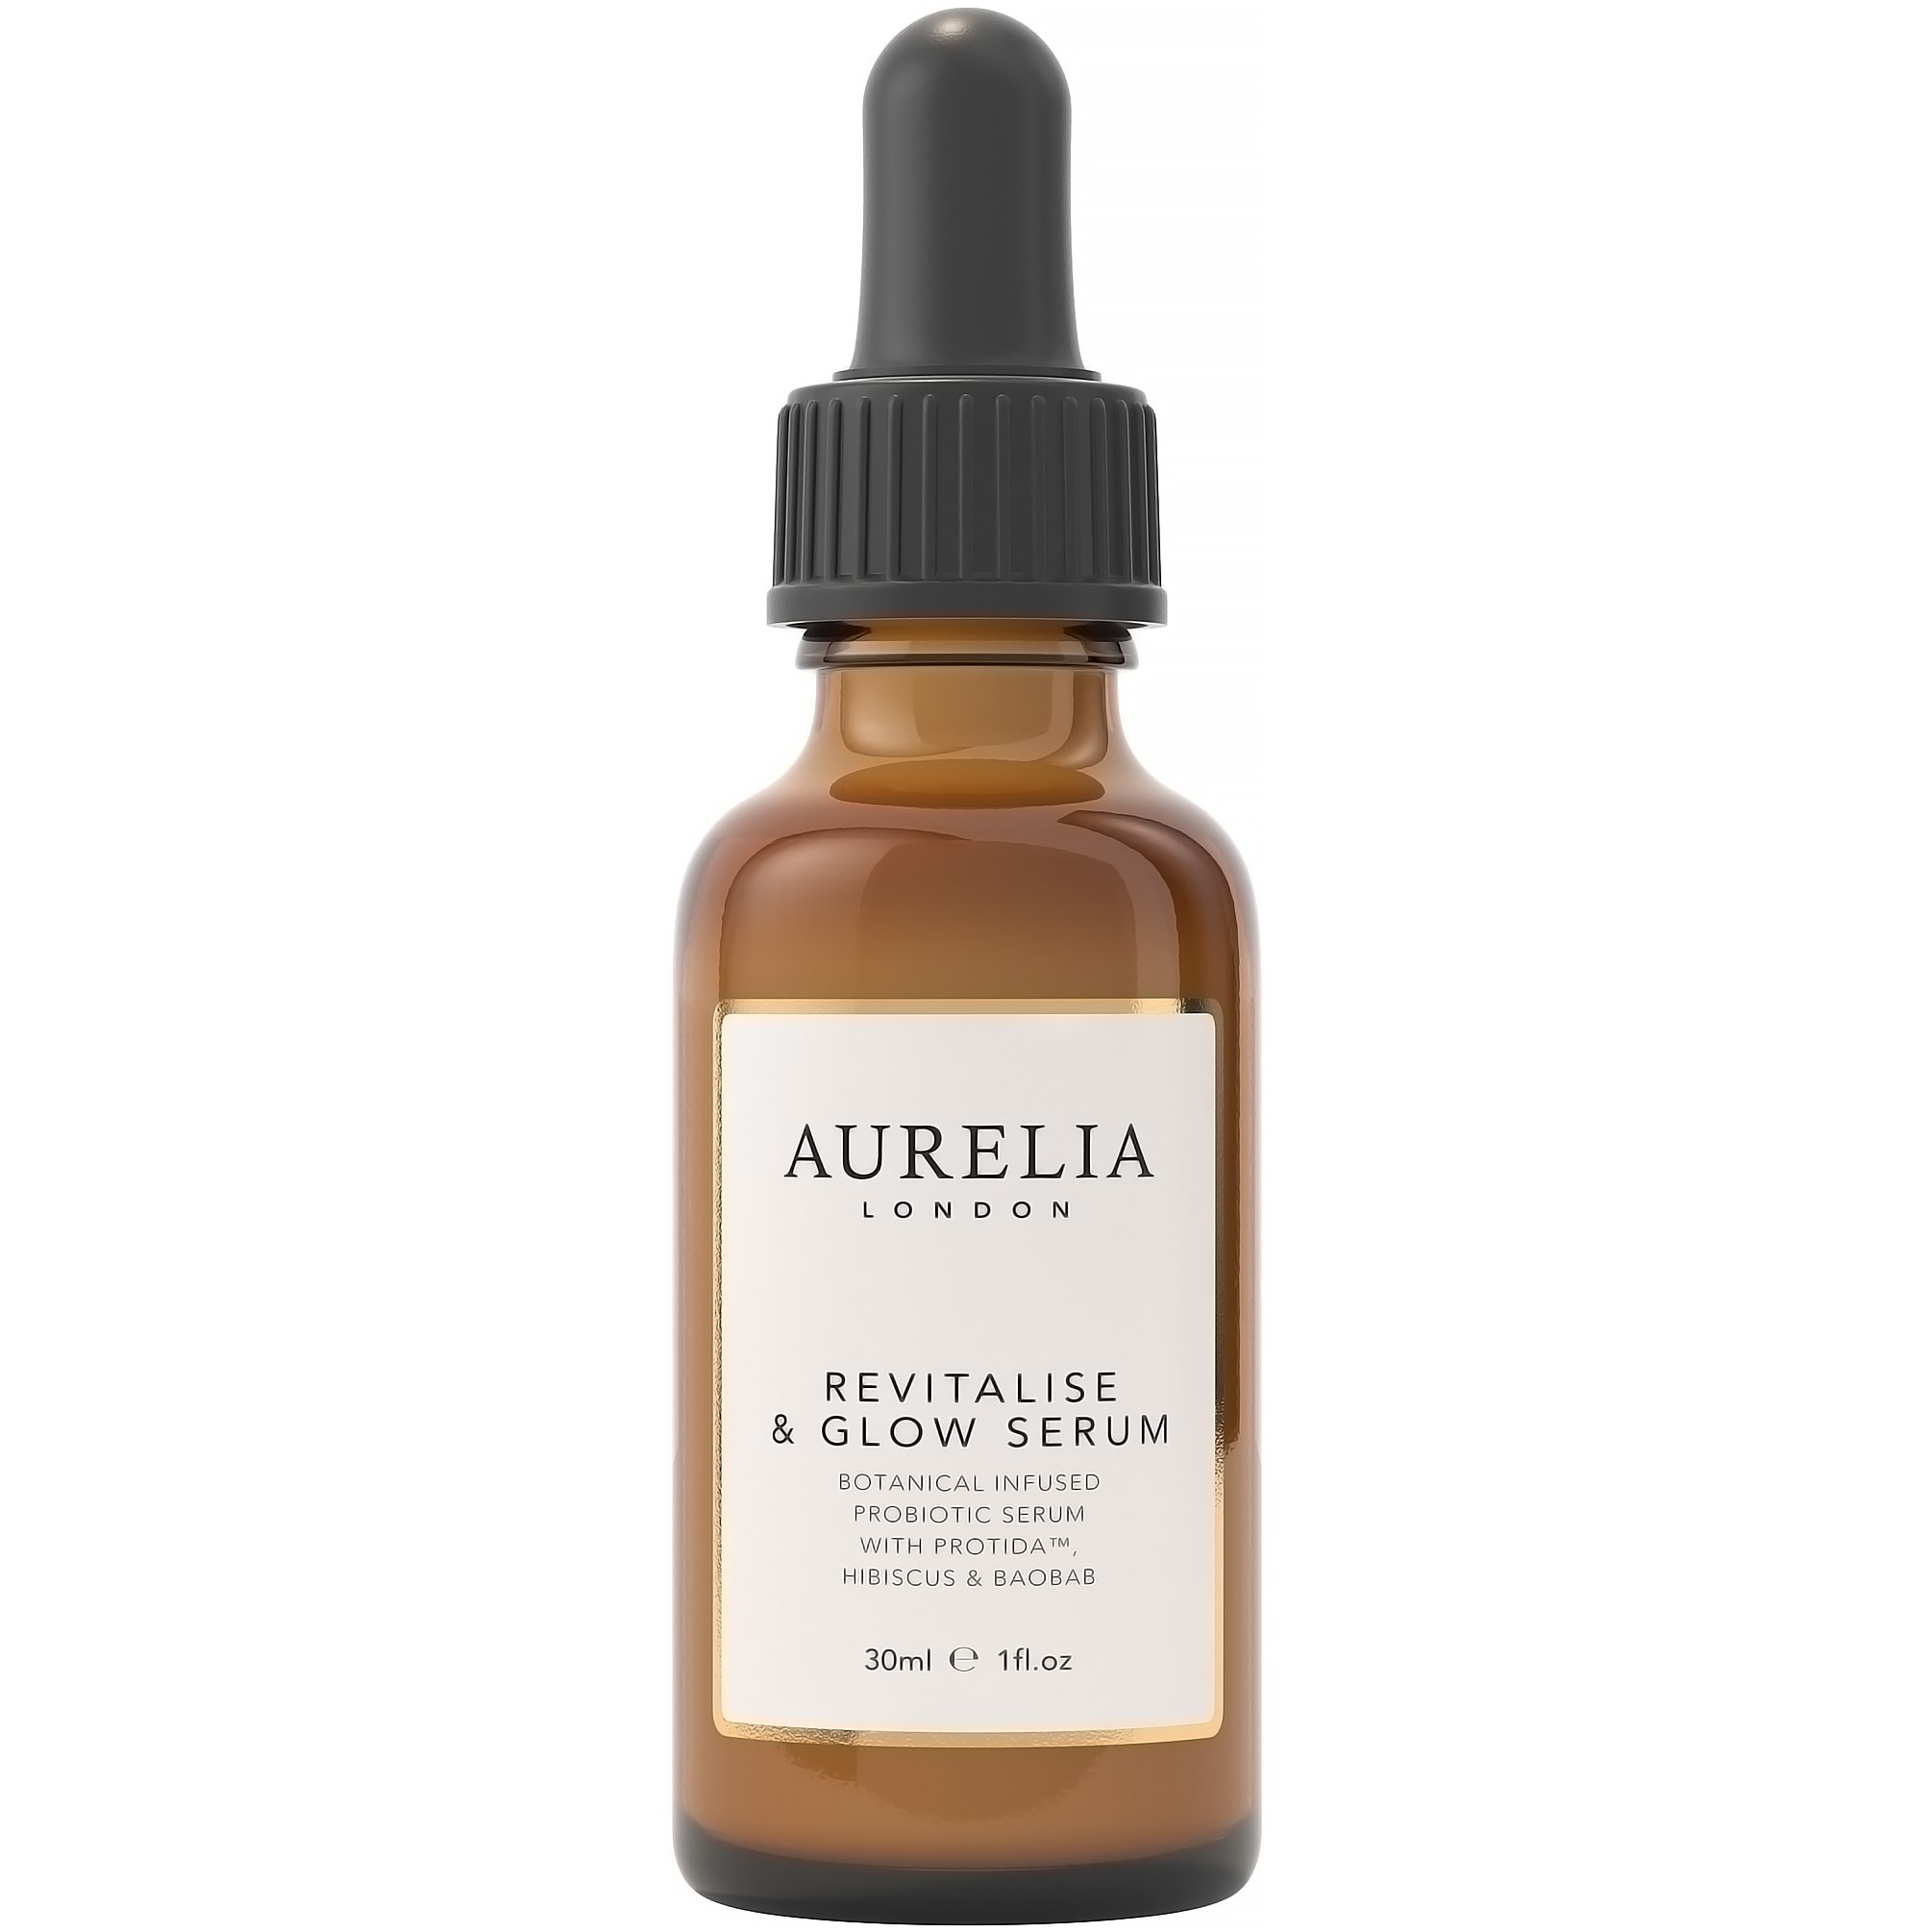 Aurelia London Revitalise & Glow Serum